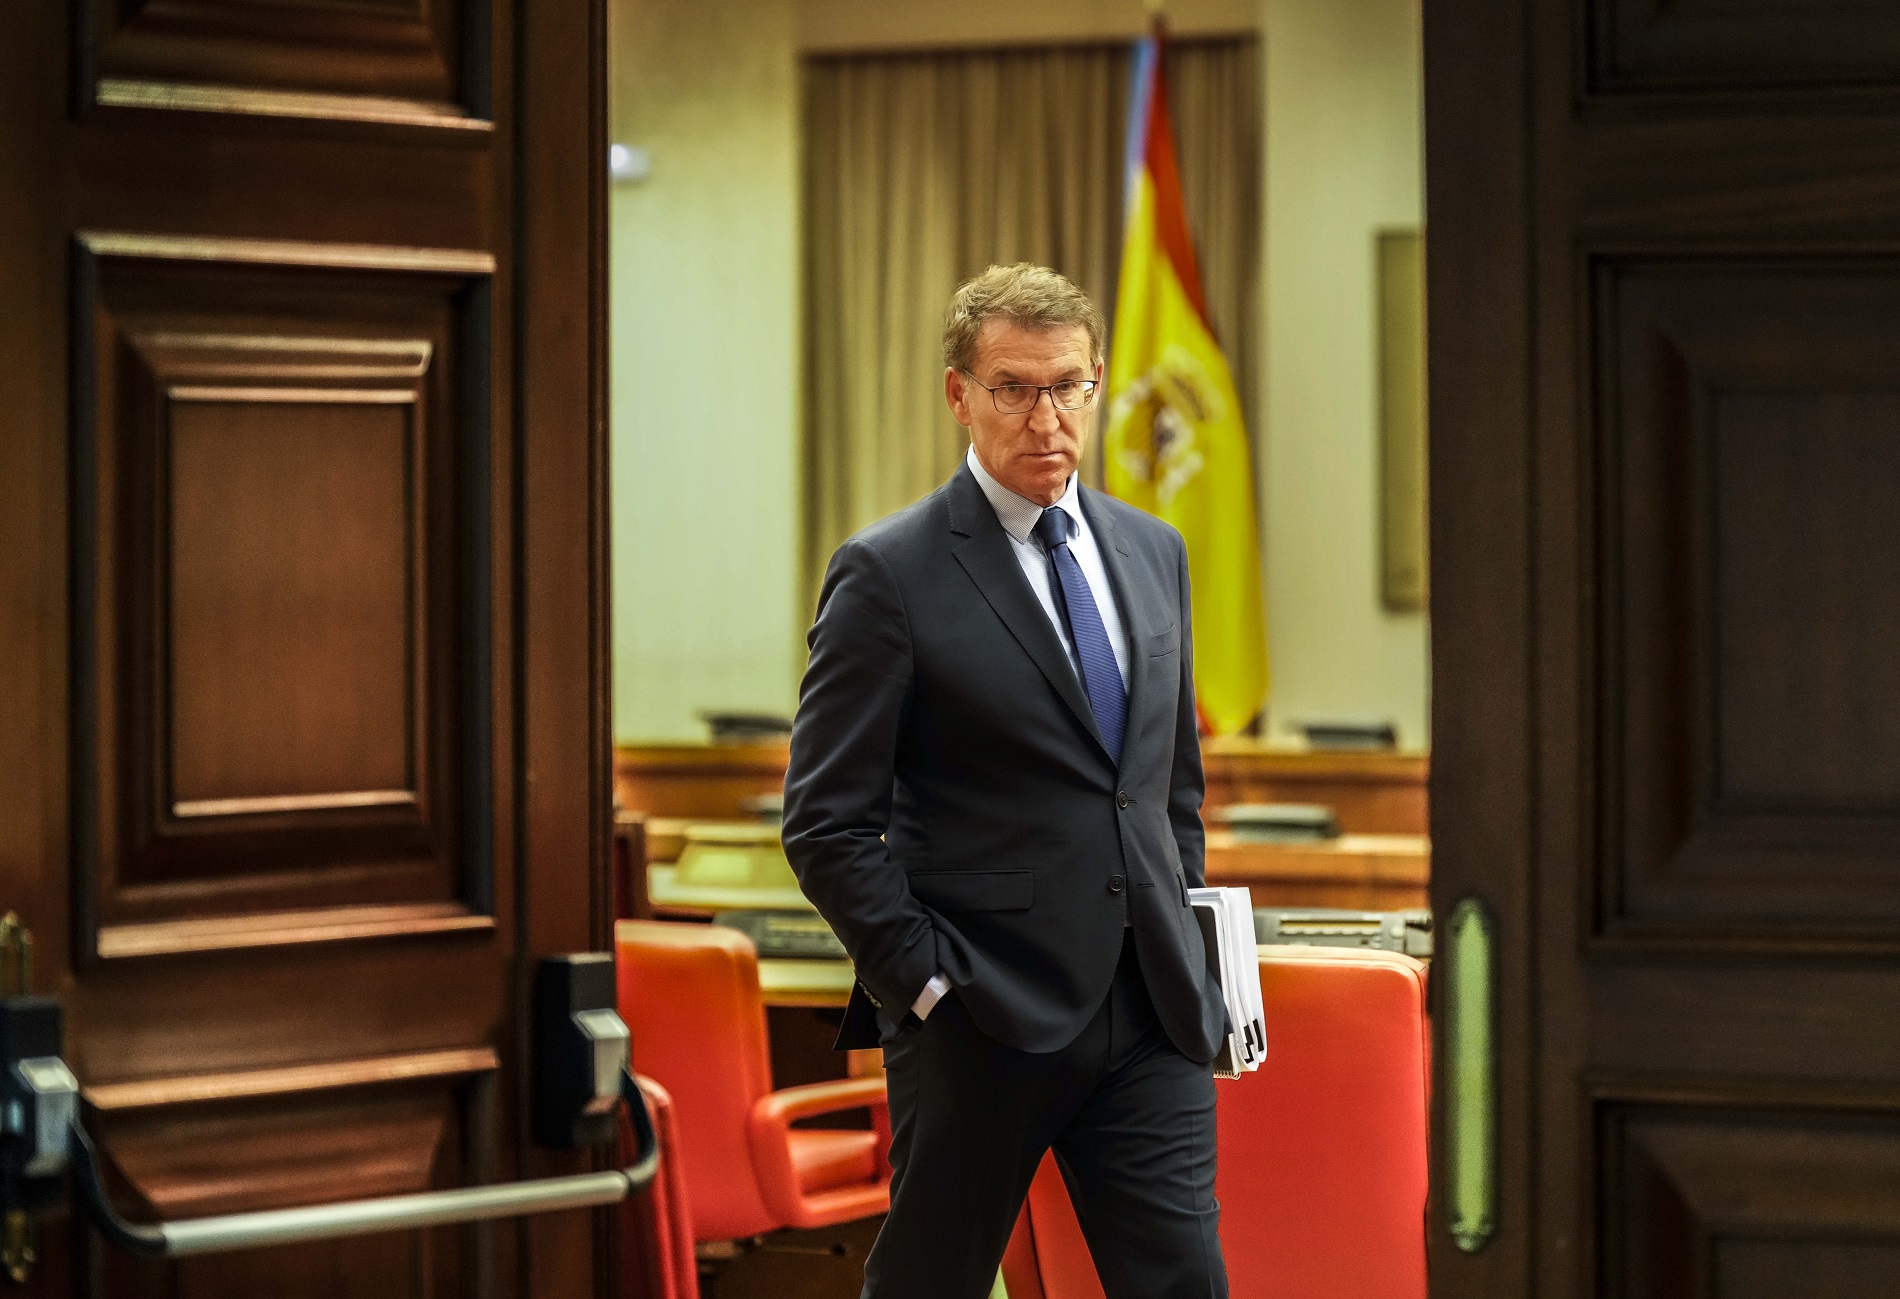 Nuñez Feijoo, en clave politica, investidura, España